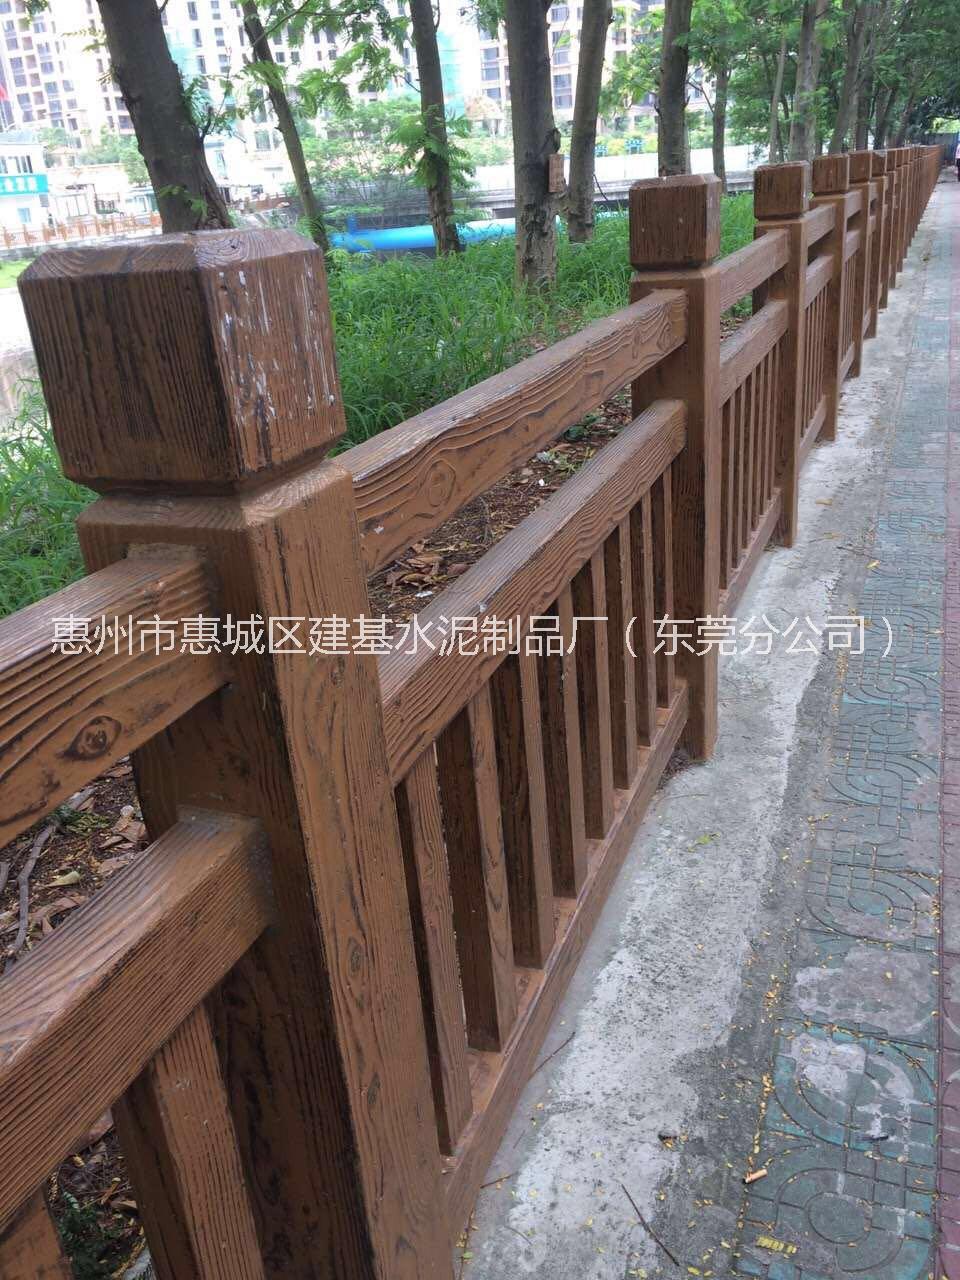 广州水泥仿木栏杆安装惠州仿木栏杆东莞专业仿木栏杆厂家